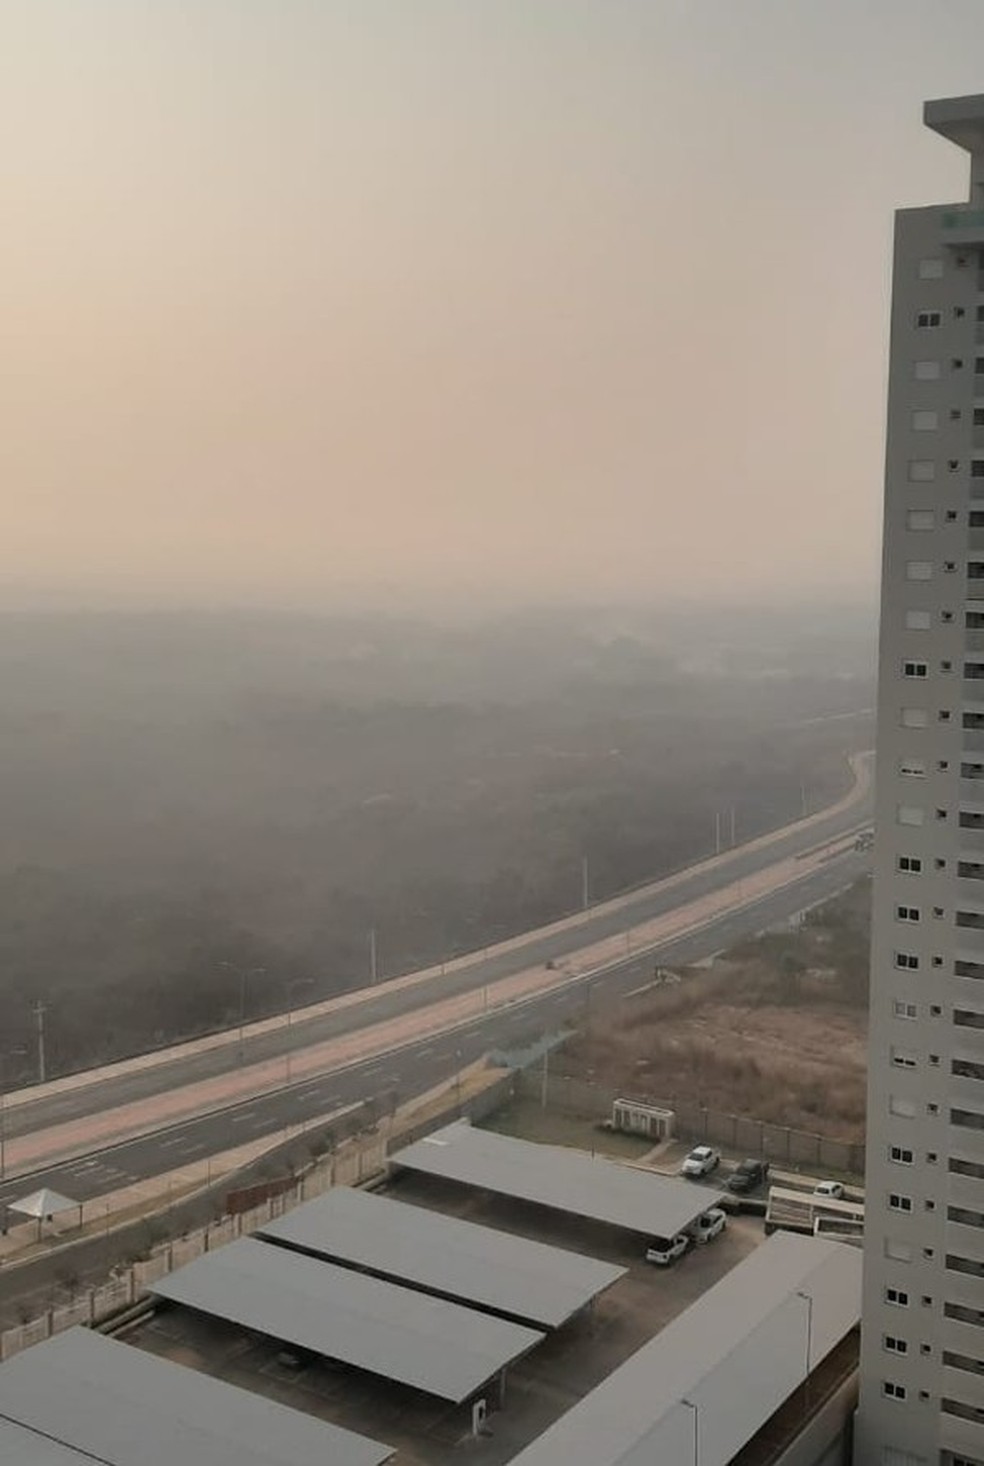 Fumaça densa cobre o céu de Cuiabá  — Foto: Luciana Giradelo/Centro América FM